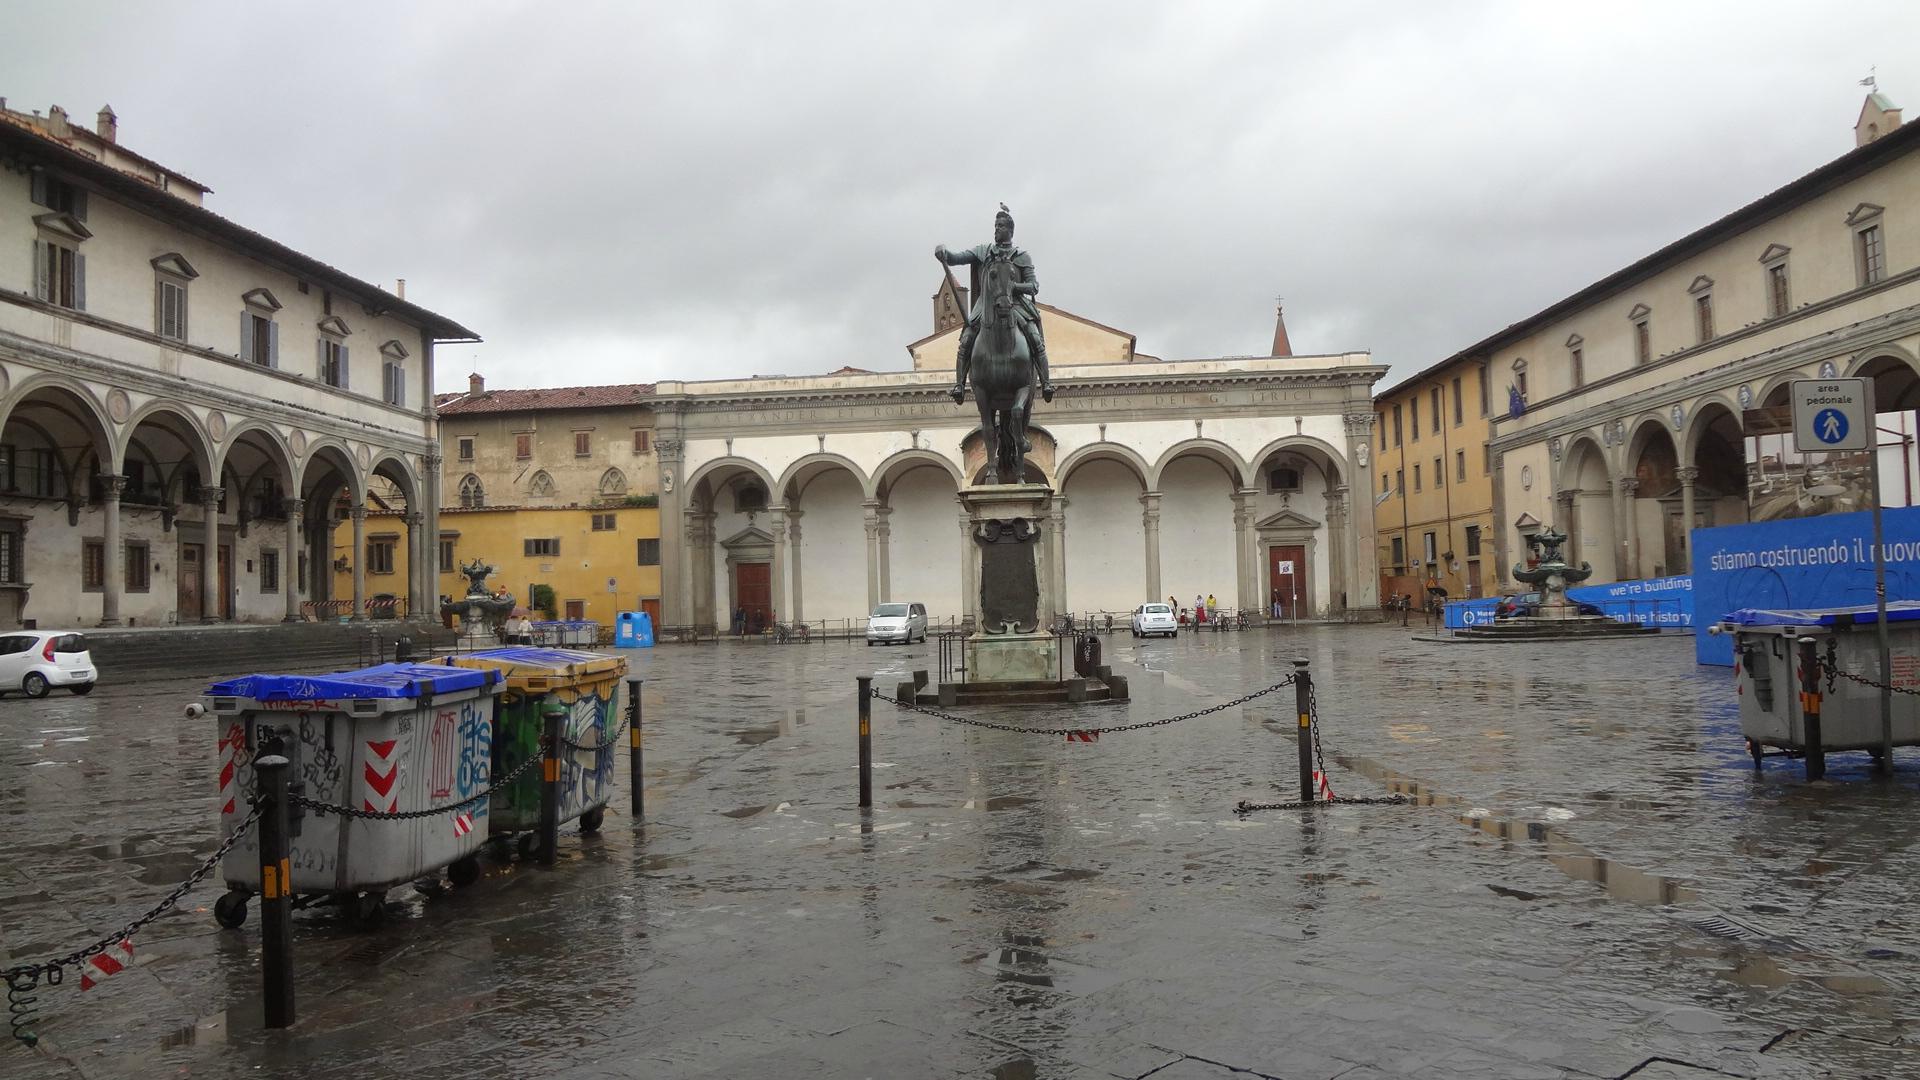 Piazza Della Santissima Annunziata